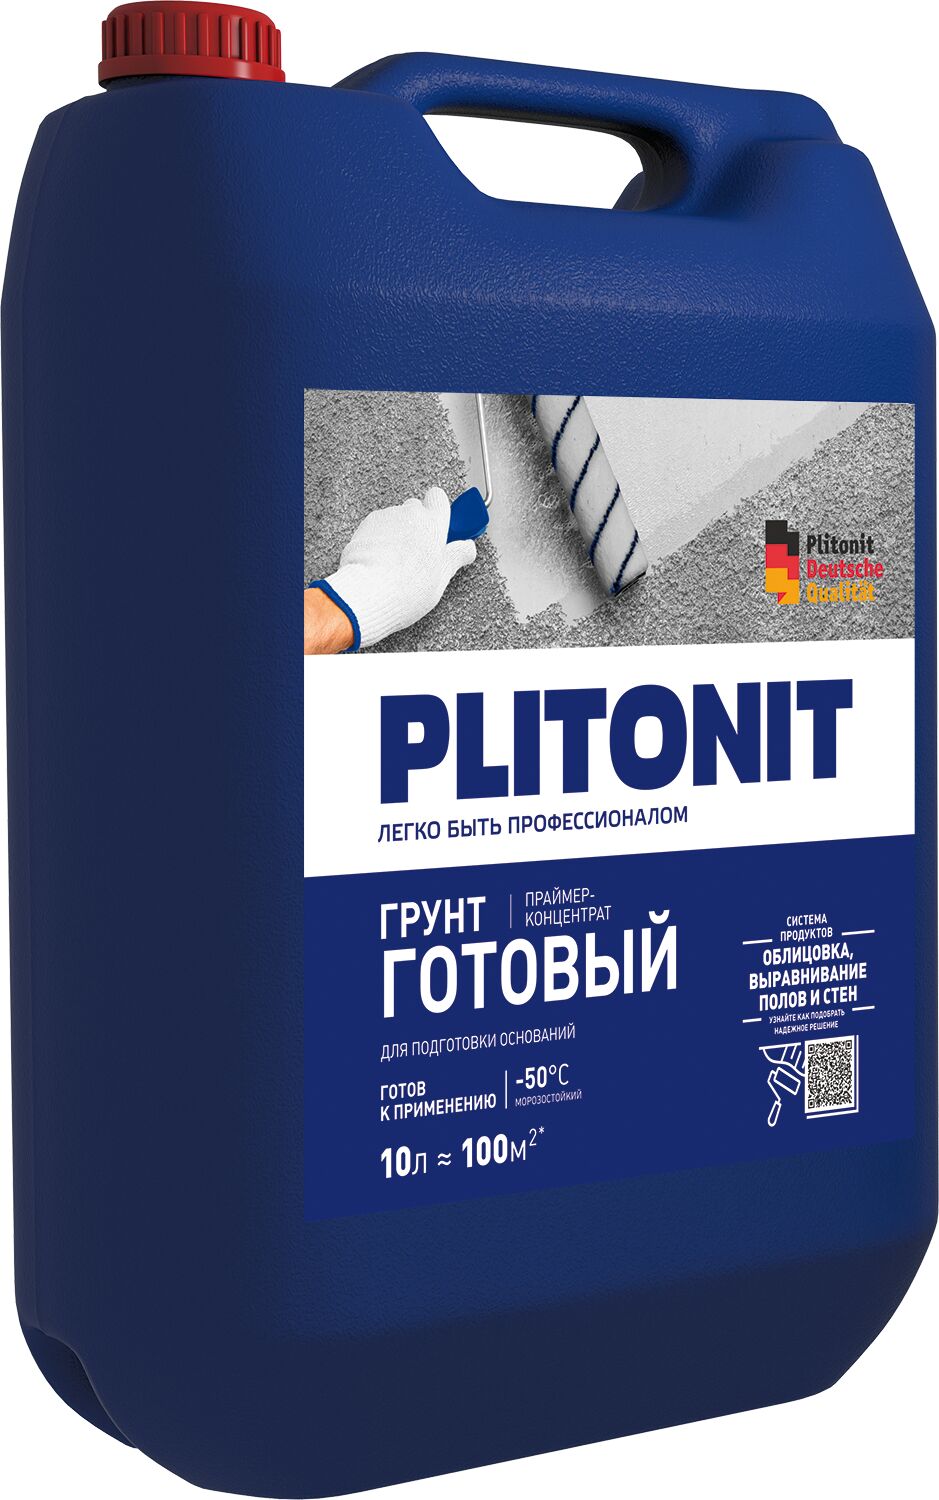 PLITONIT Готовый Грунт -10 праймер акрилатный для подготовки оснований